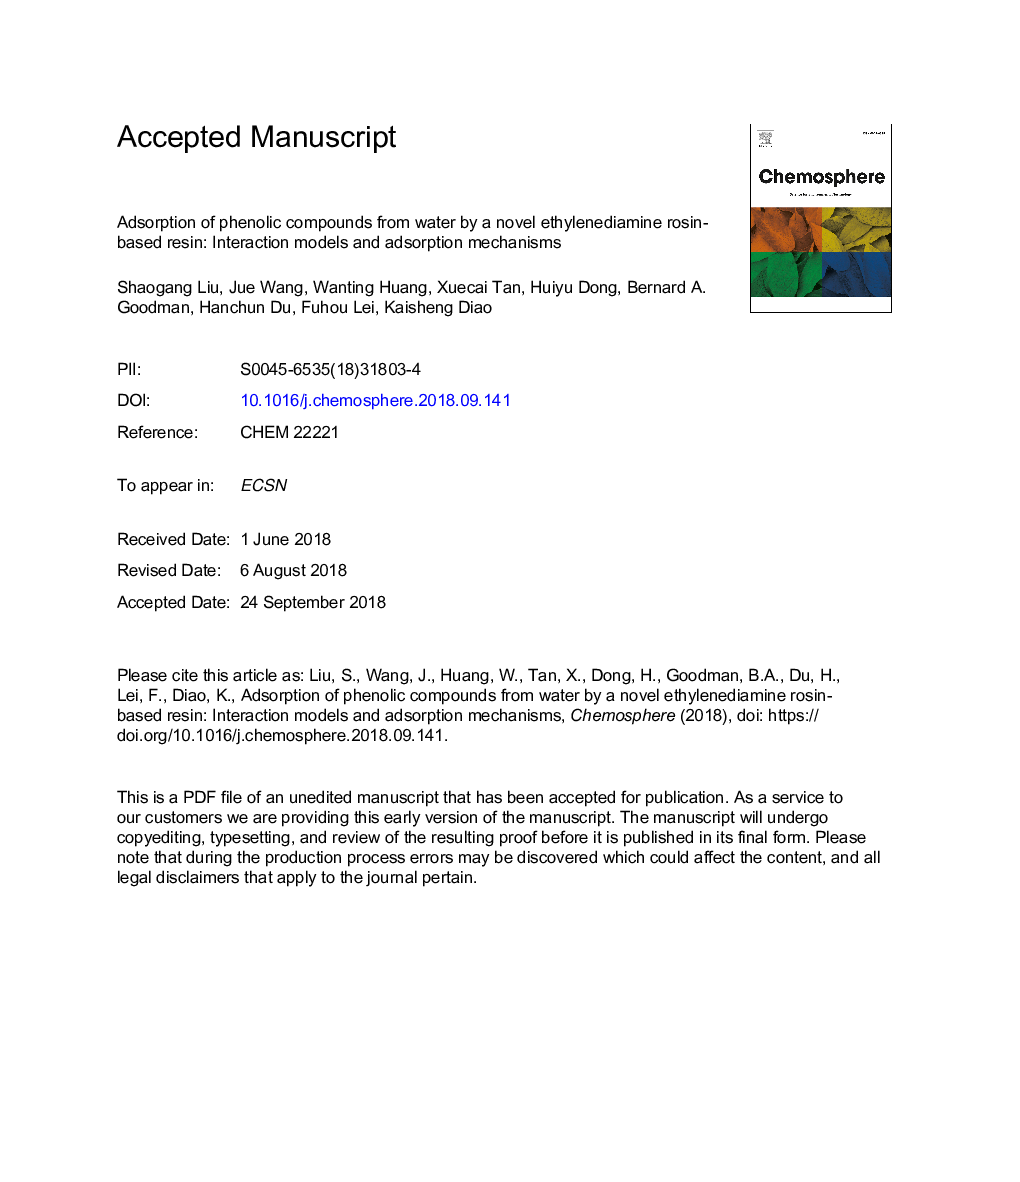 جذب ترکیبات فنلی از آب توسط یک رزین بر اساس رزین اتیلنیدامین رزین: مدلهای تعامل و مکانیزم جذب